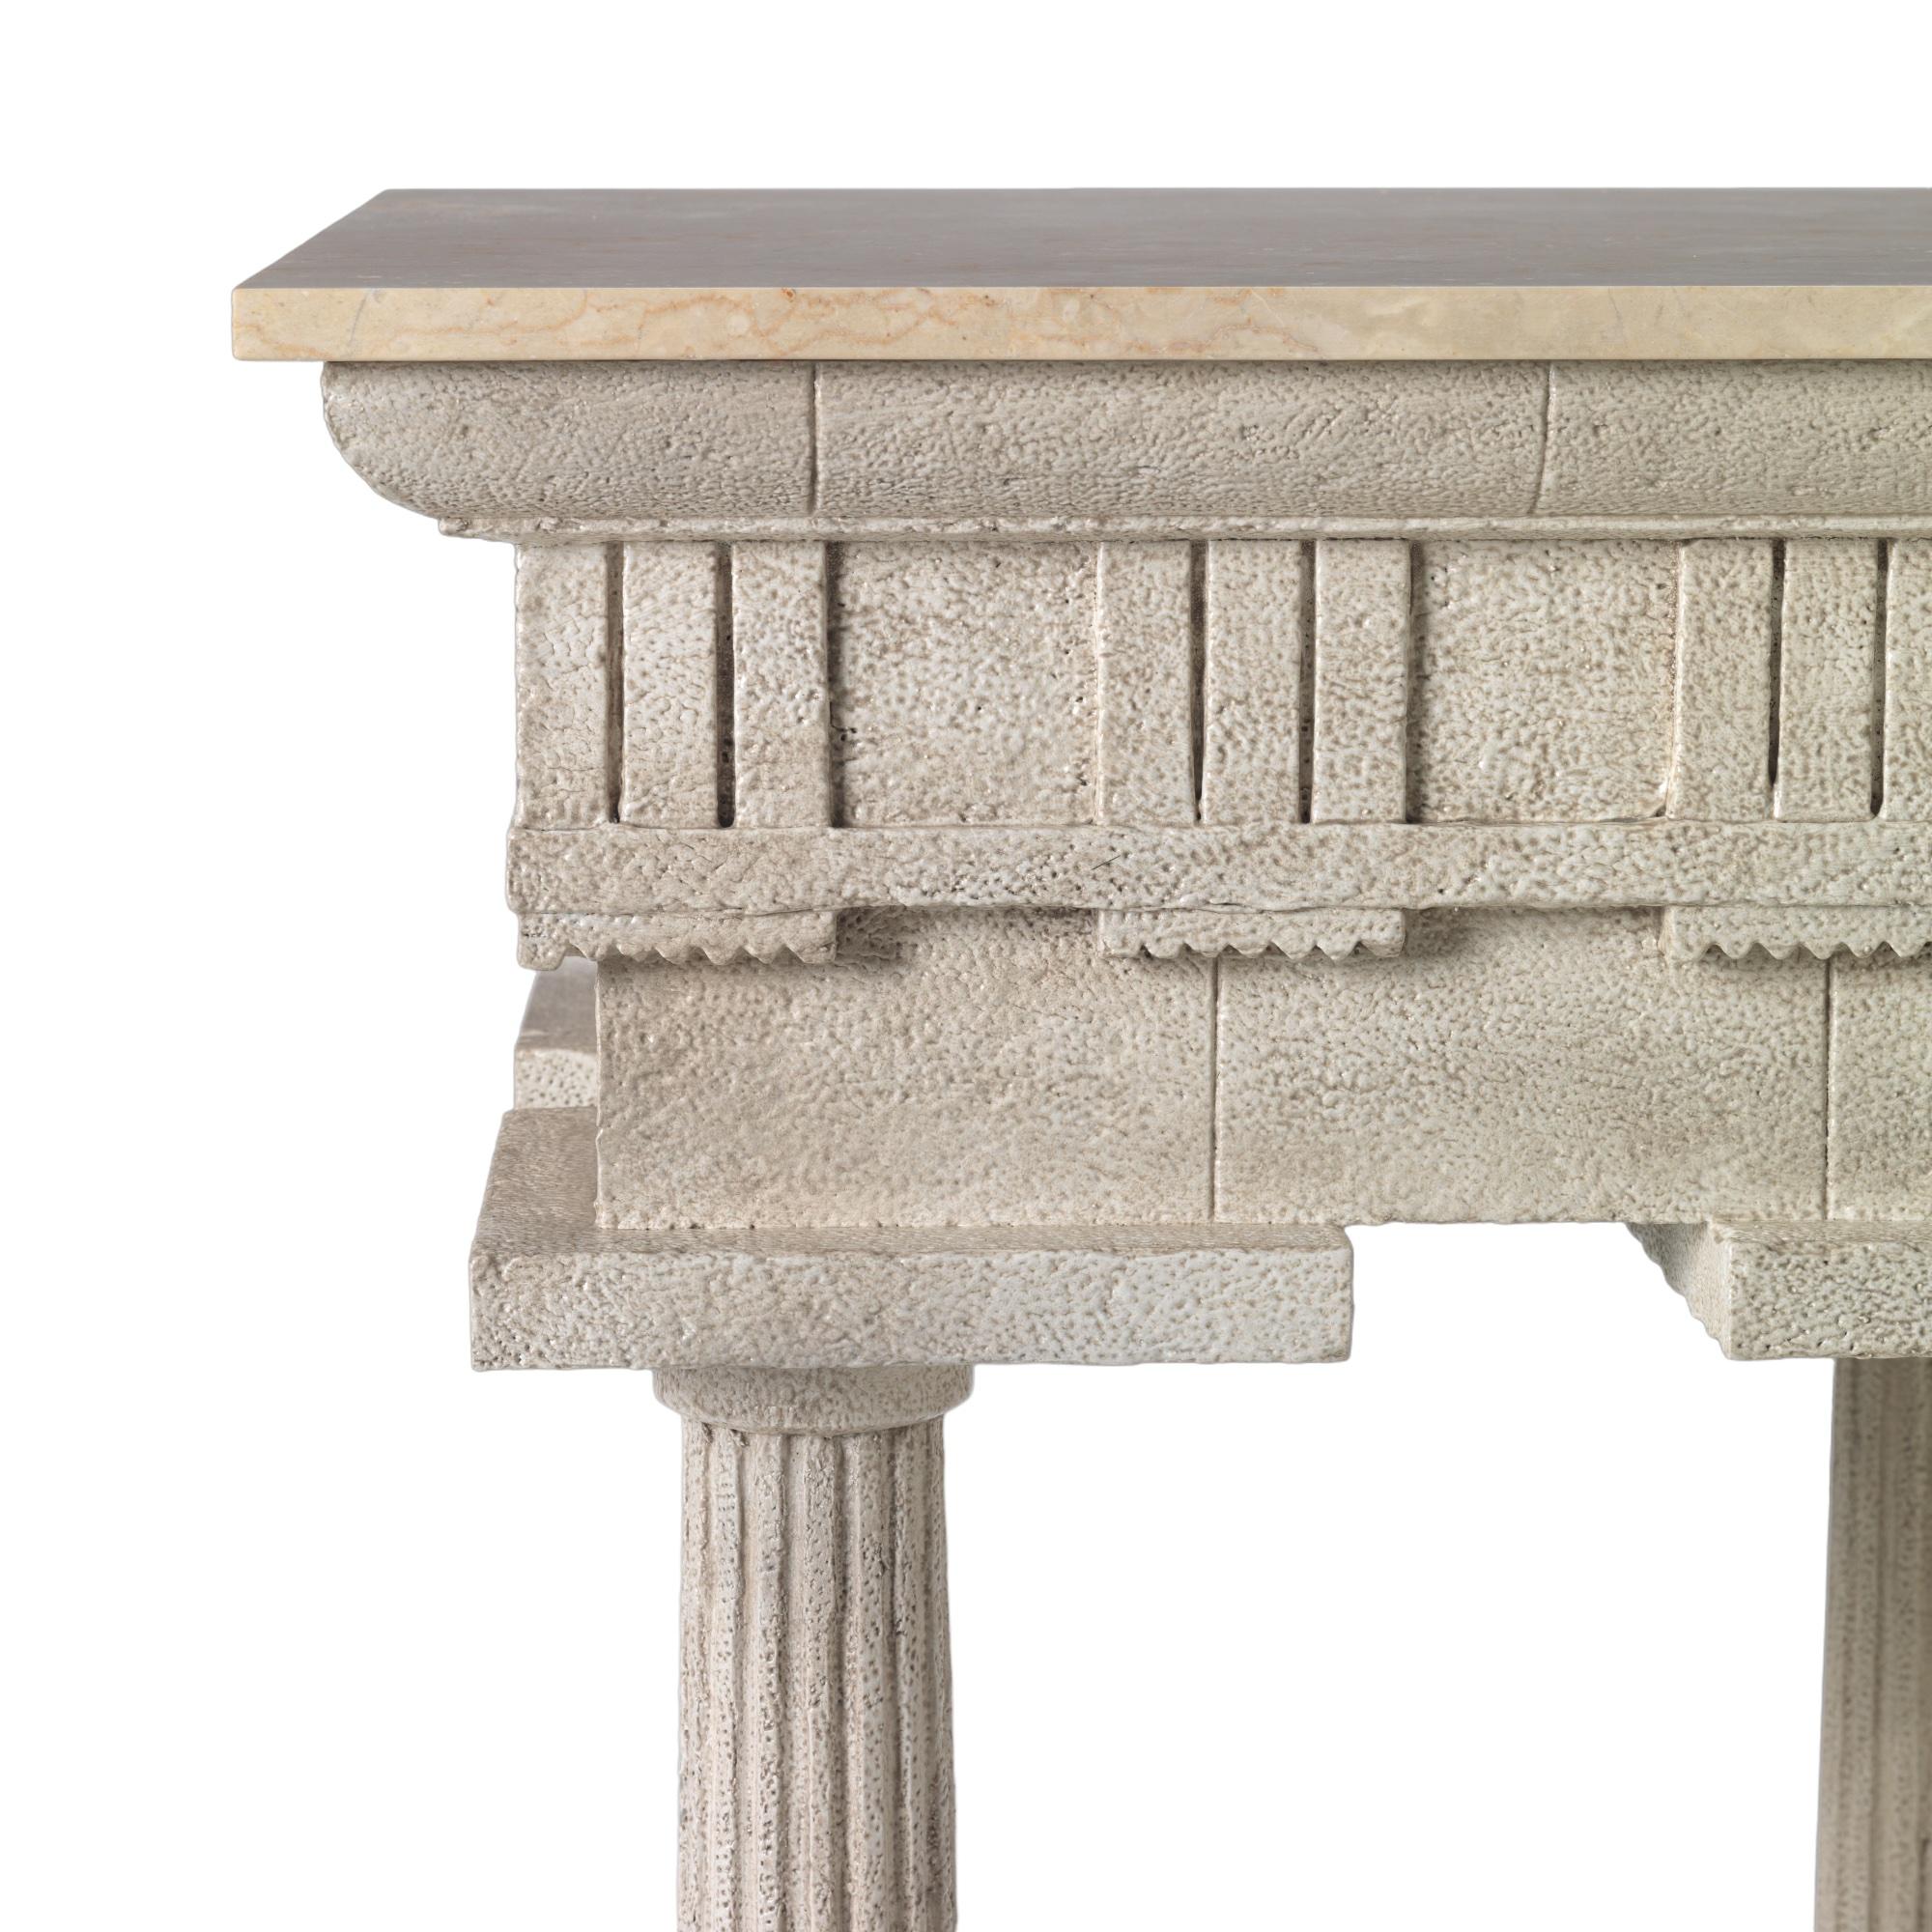 Ein außergewöhnlicher klassischer Sockel im Grand-Tour-Design, der vom Tempel von Paestum inspiriert wurde. Geschnitzt in Mahagoni und Spezialist gealtert Stein gemalt und mit einem leicht gealterten Marmorplatte.